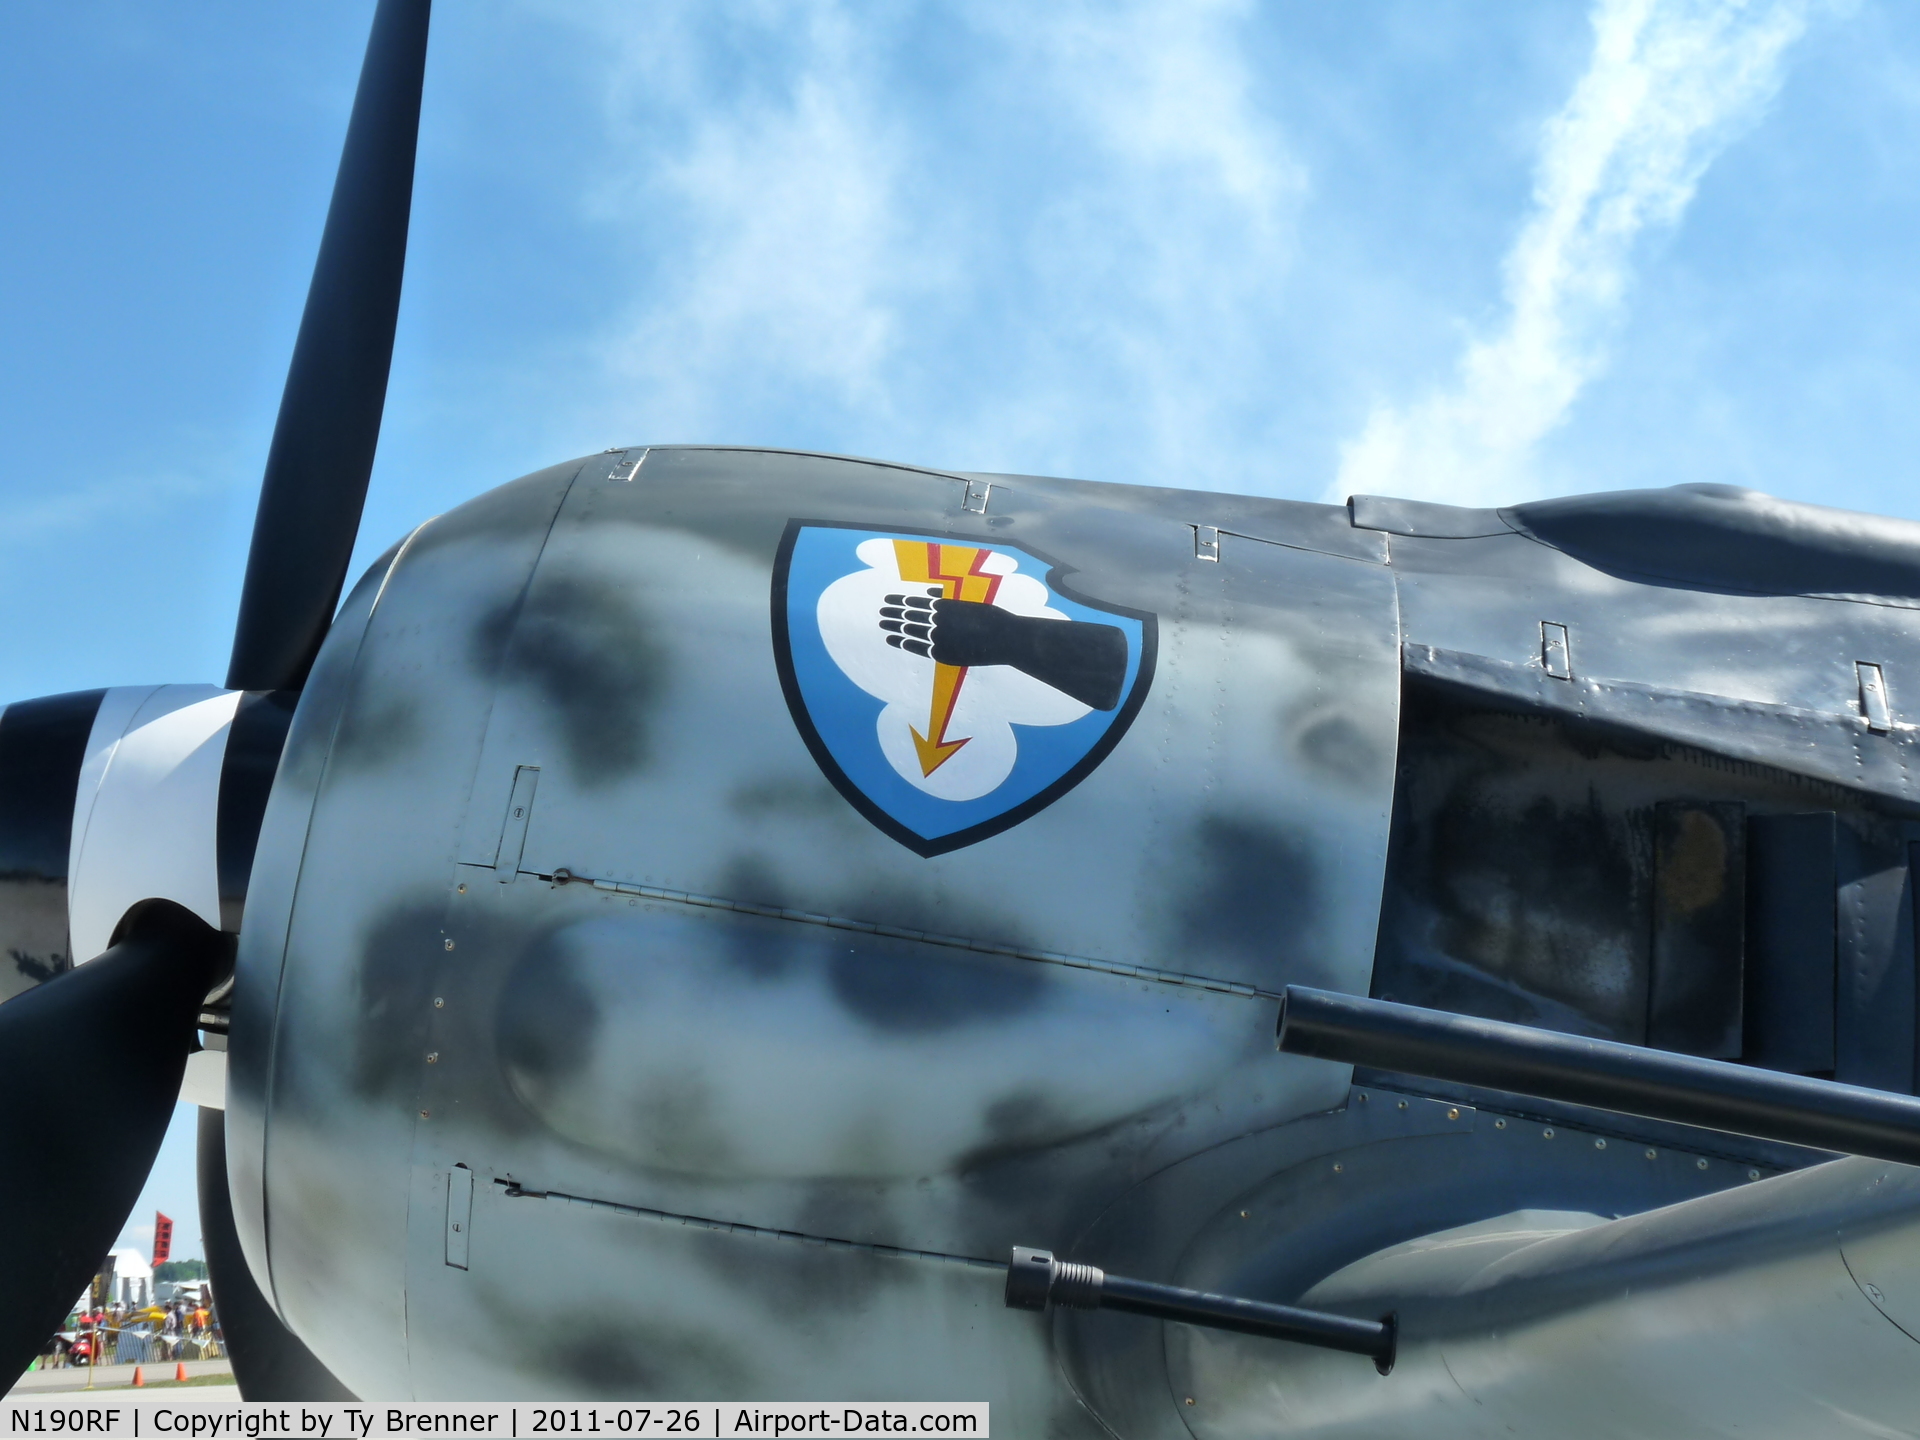 N190RF, Focke-Wulf Fw-190A-9 C/N 980 574, FW 190 A-9 